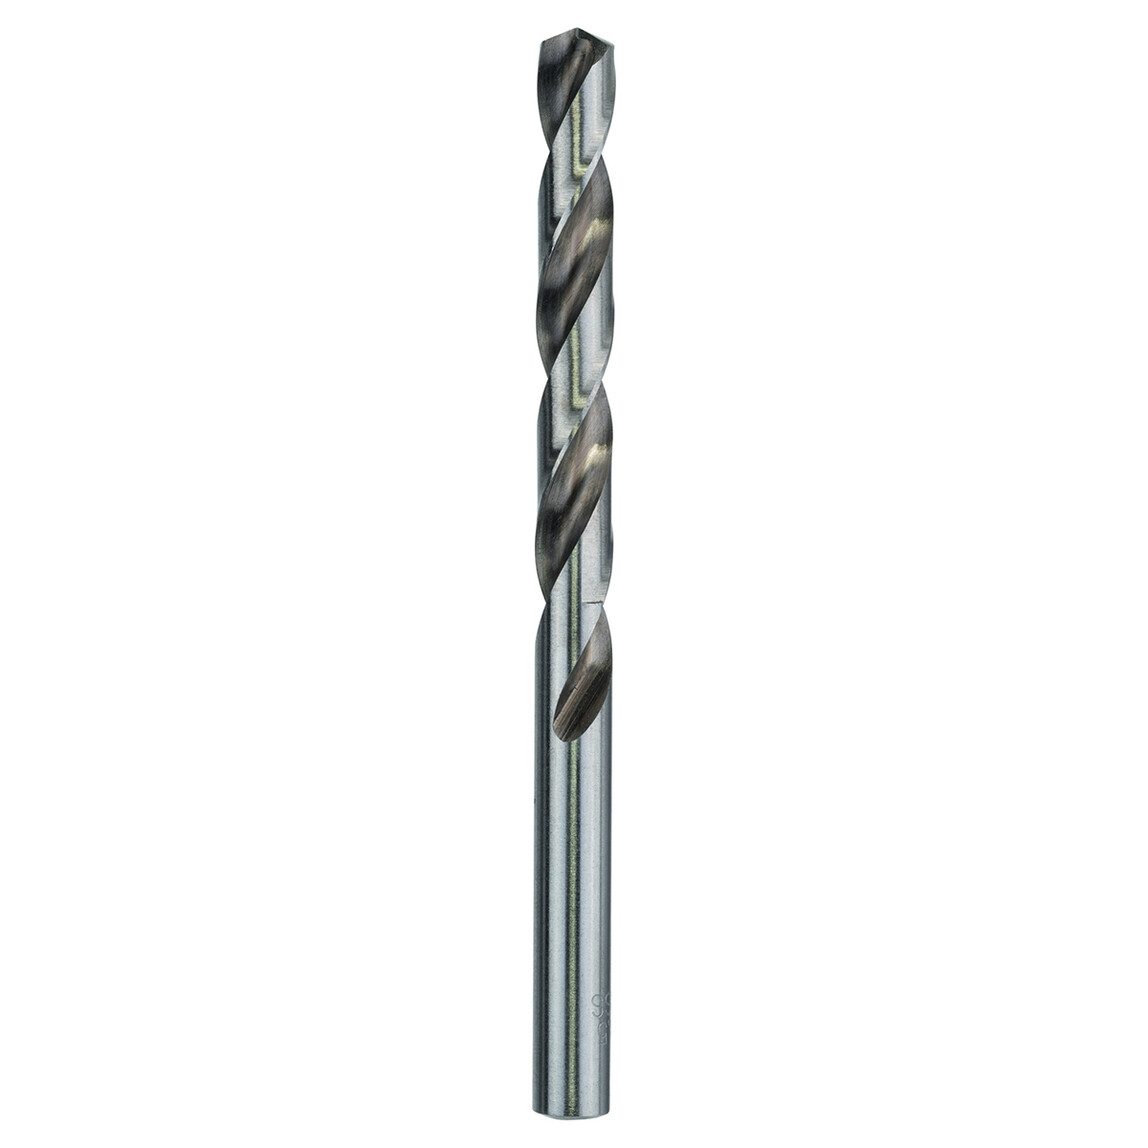    Craftomat HSS-G Metal Matkap Ucu 8.5 mm  